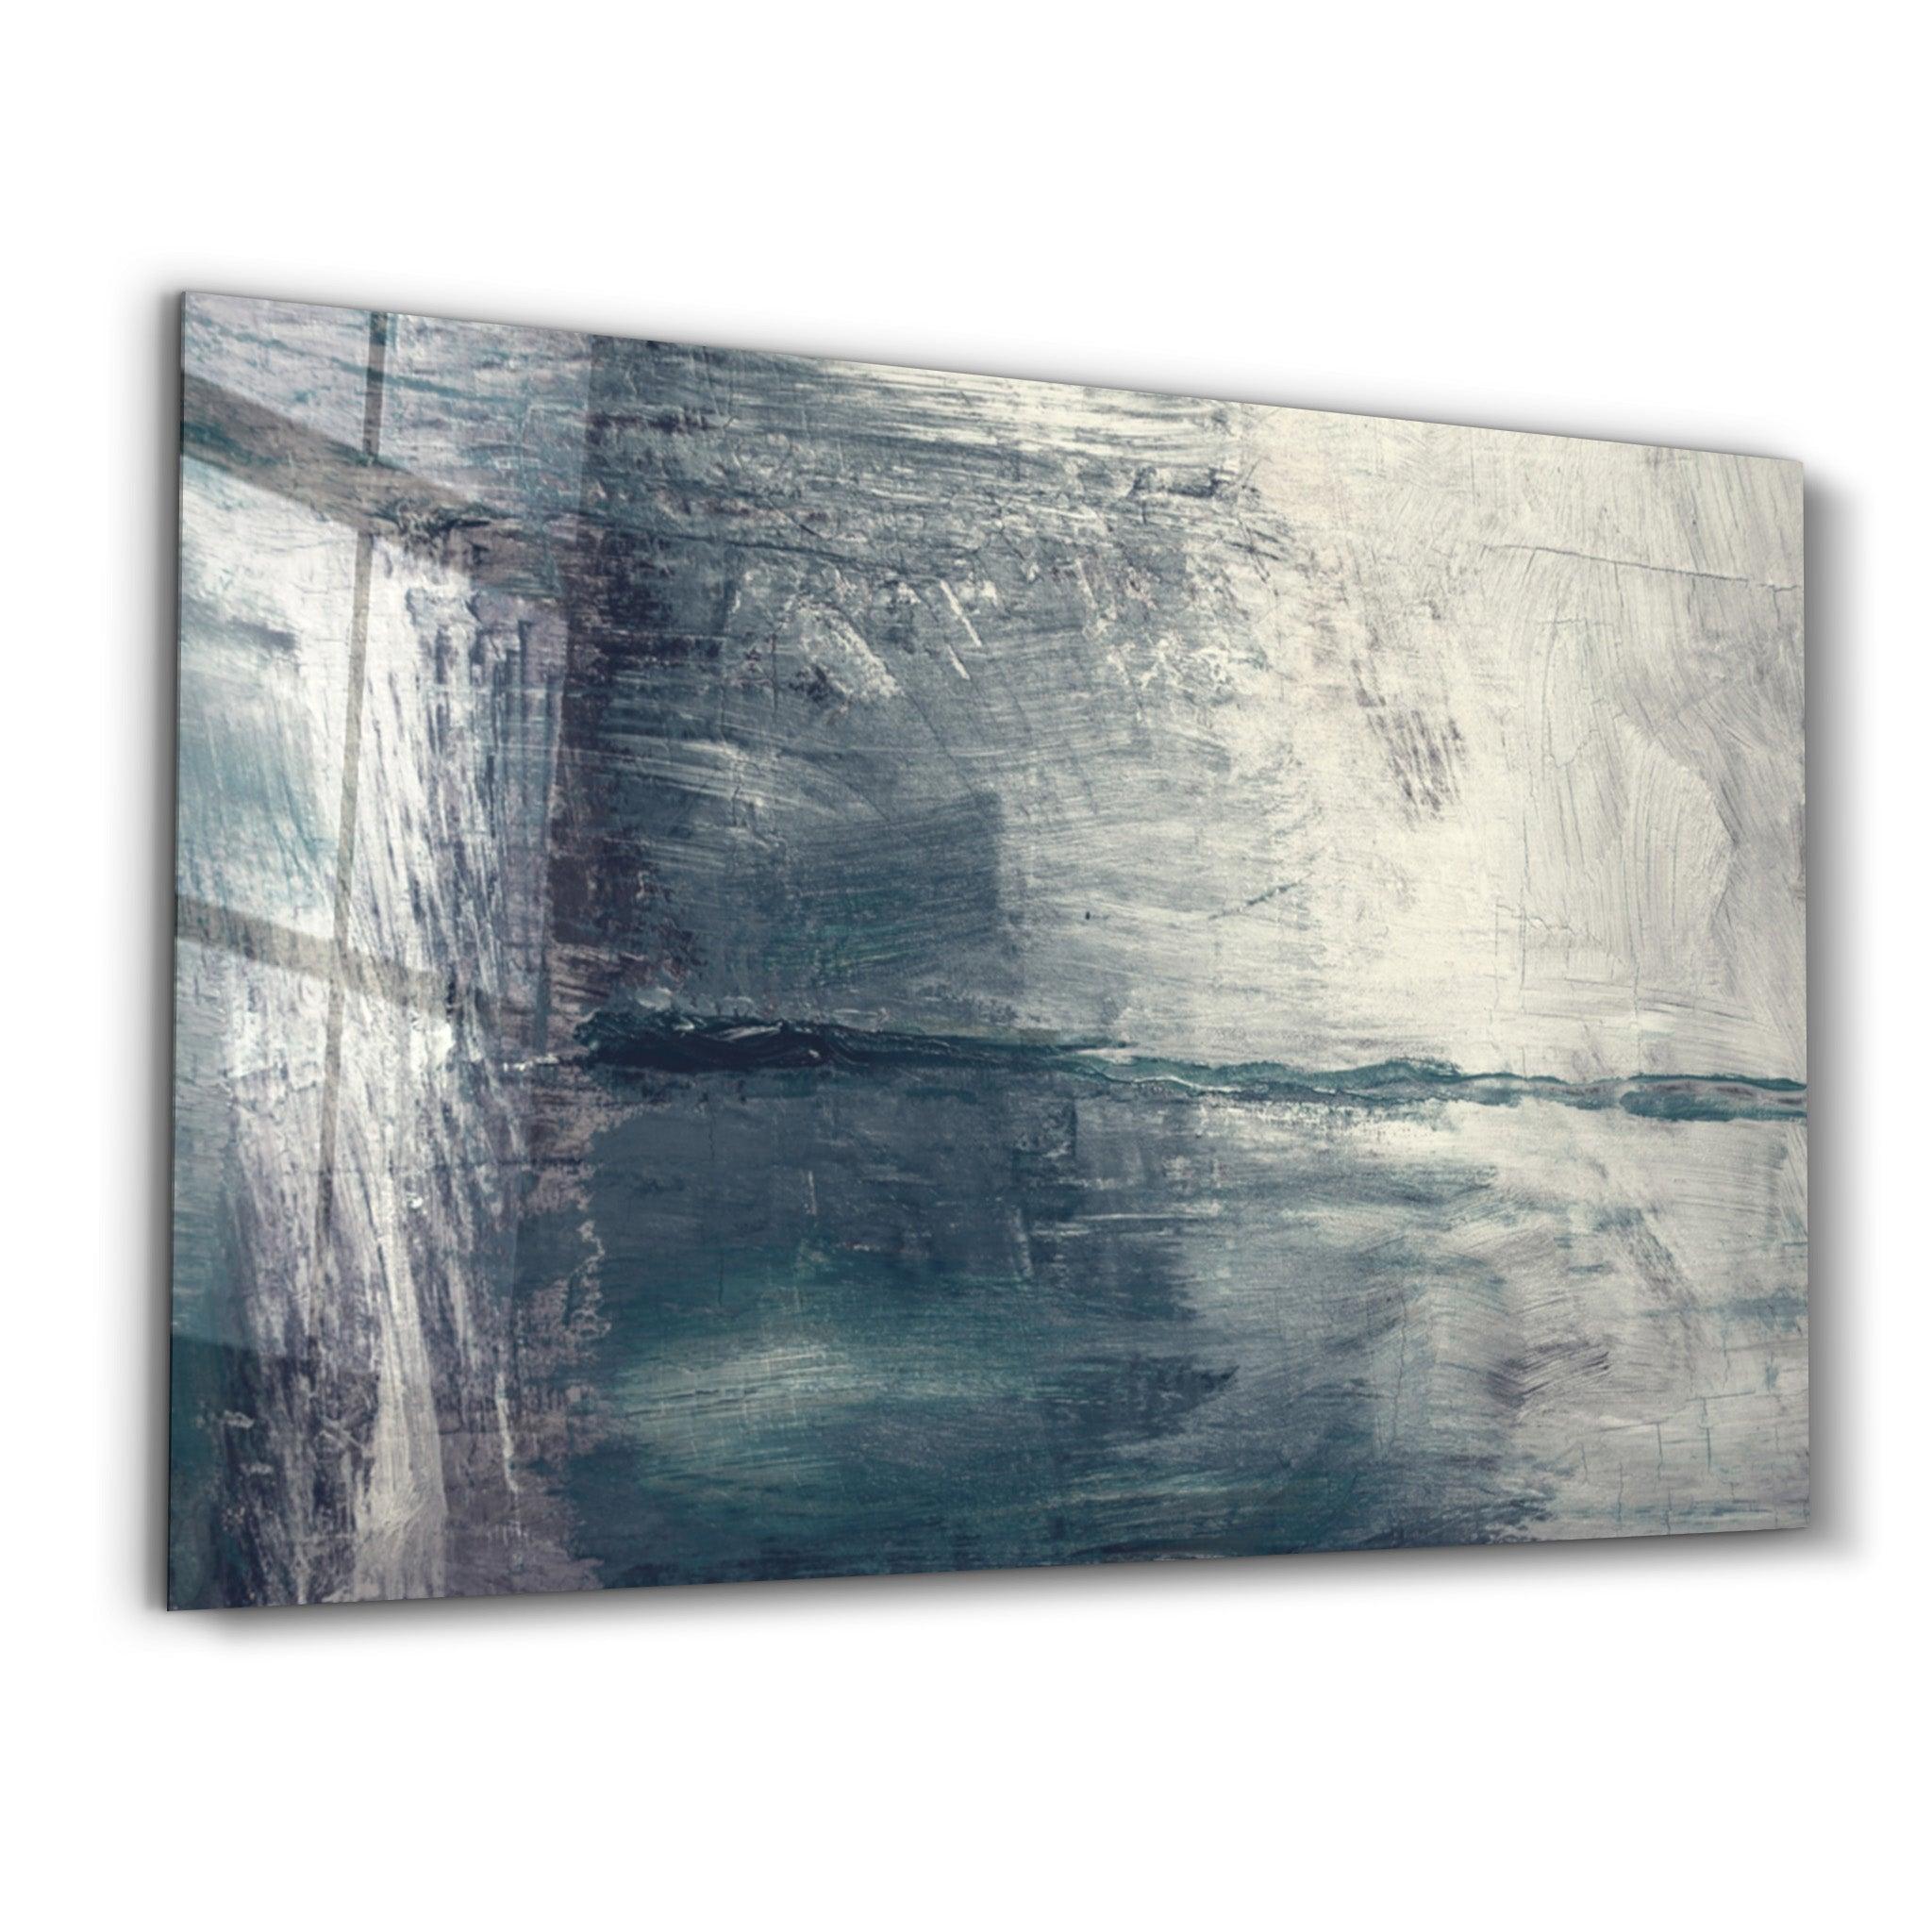 Abstract Gray Sea | Glass Wall Art - ArtDesigna Glass Printing Wall Art